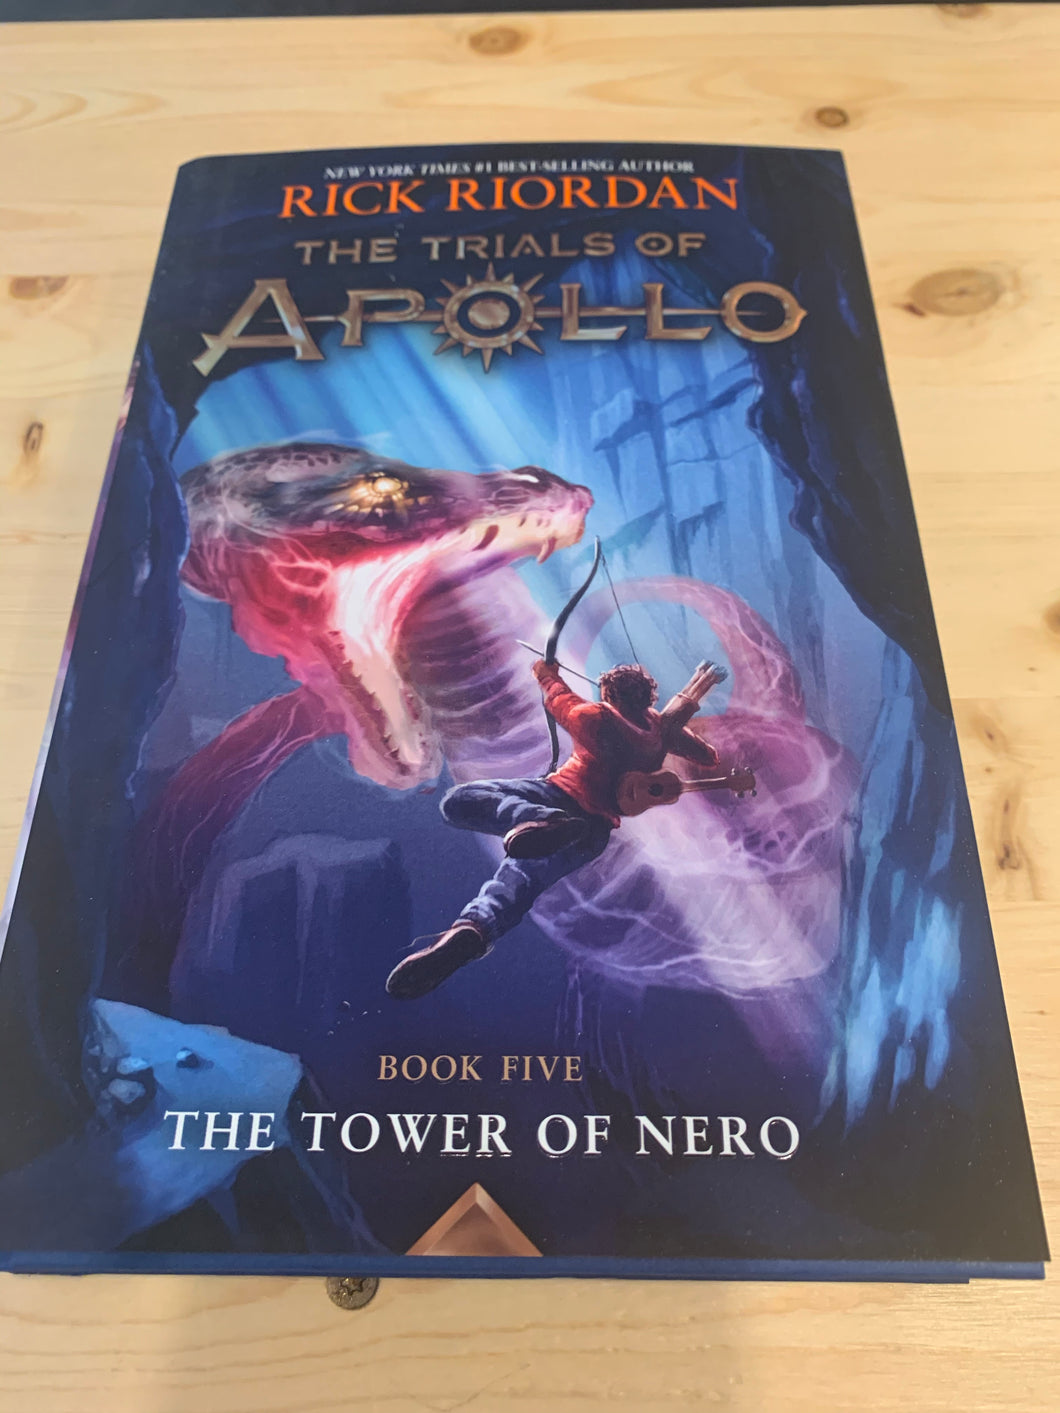 The Tower of Nero, book five, The Trials of Apollo